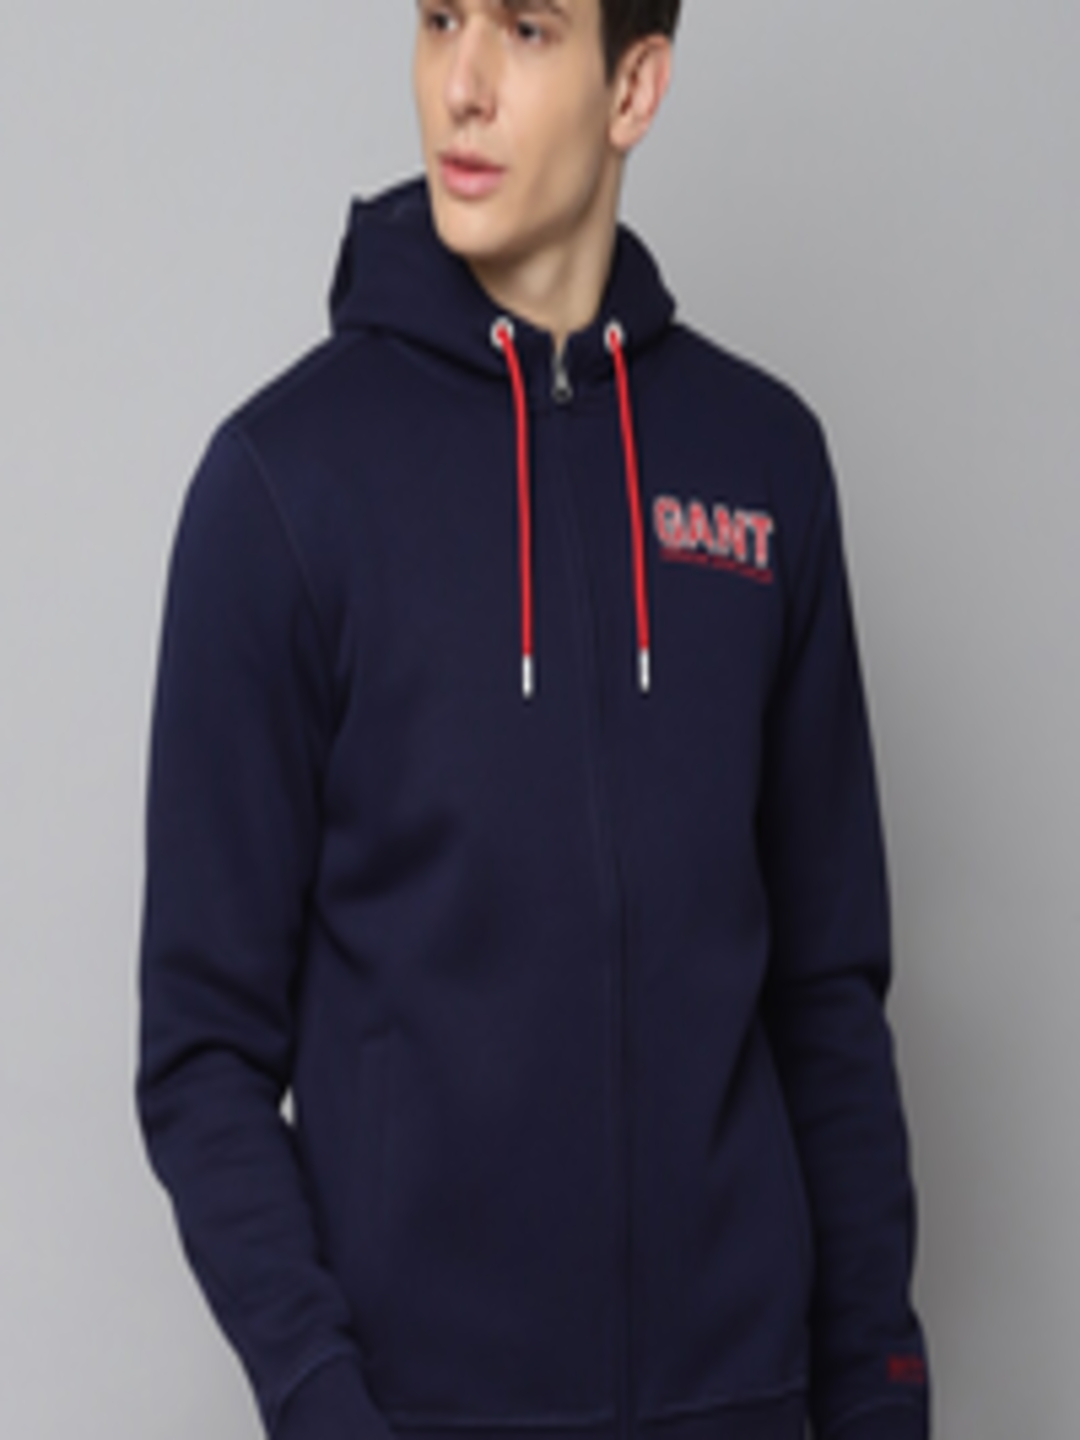 Buy GANT Men Navy Blue Solid Hooded Sweatshirt - Sweatshirts for Men ...